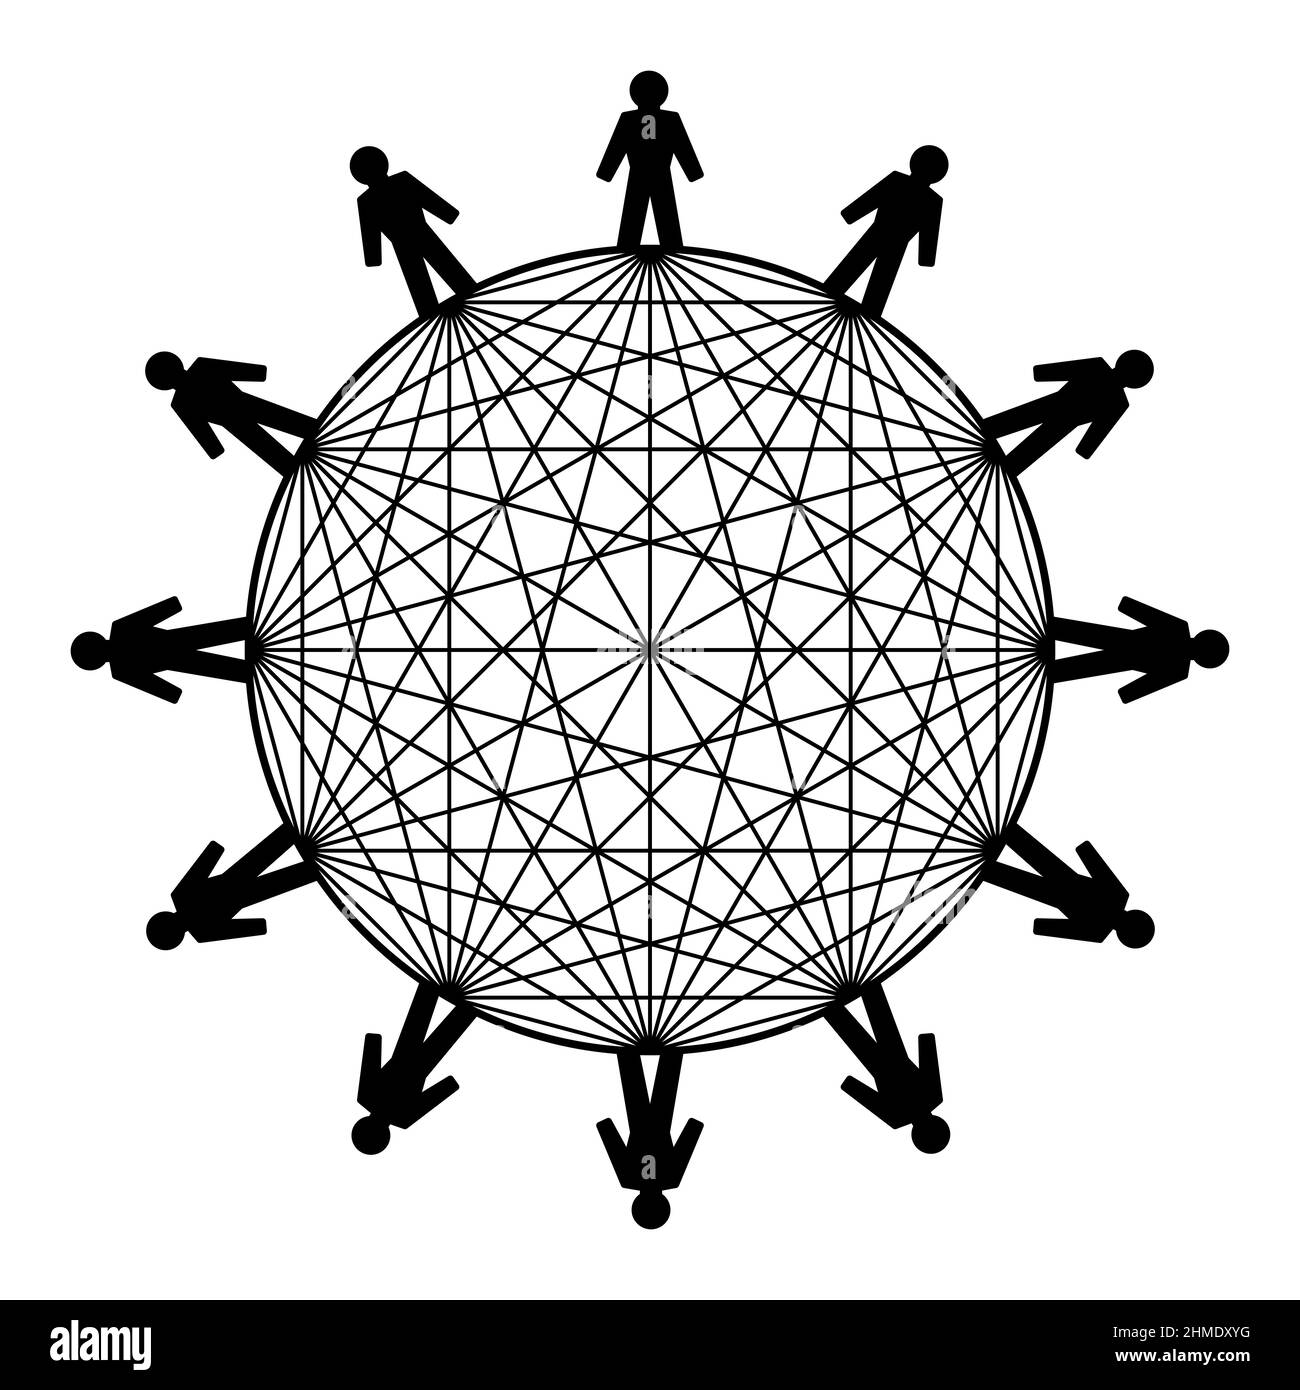 Symbol für die Macht der Vernetzung. Zwölf Menschen stehen im Kreis, verbunden mit Linien. Die Anzahl der eindeutig möglichen Verbindungen beträgt 66. Stockfoto